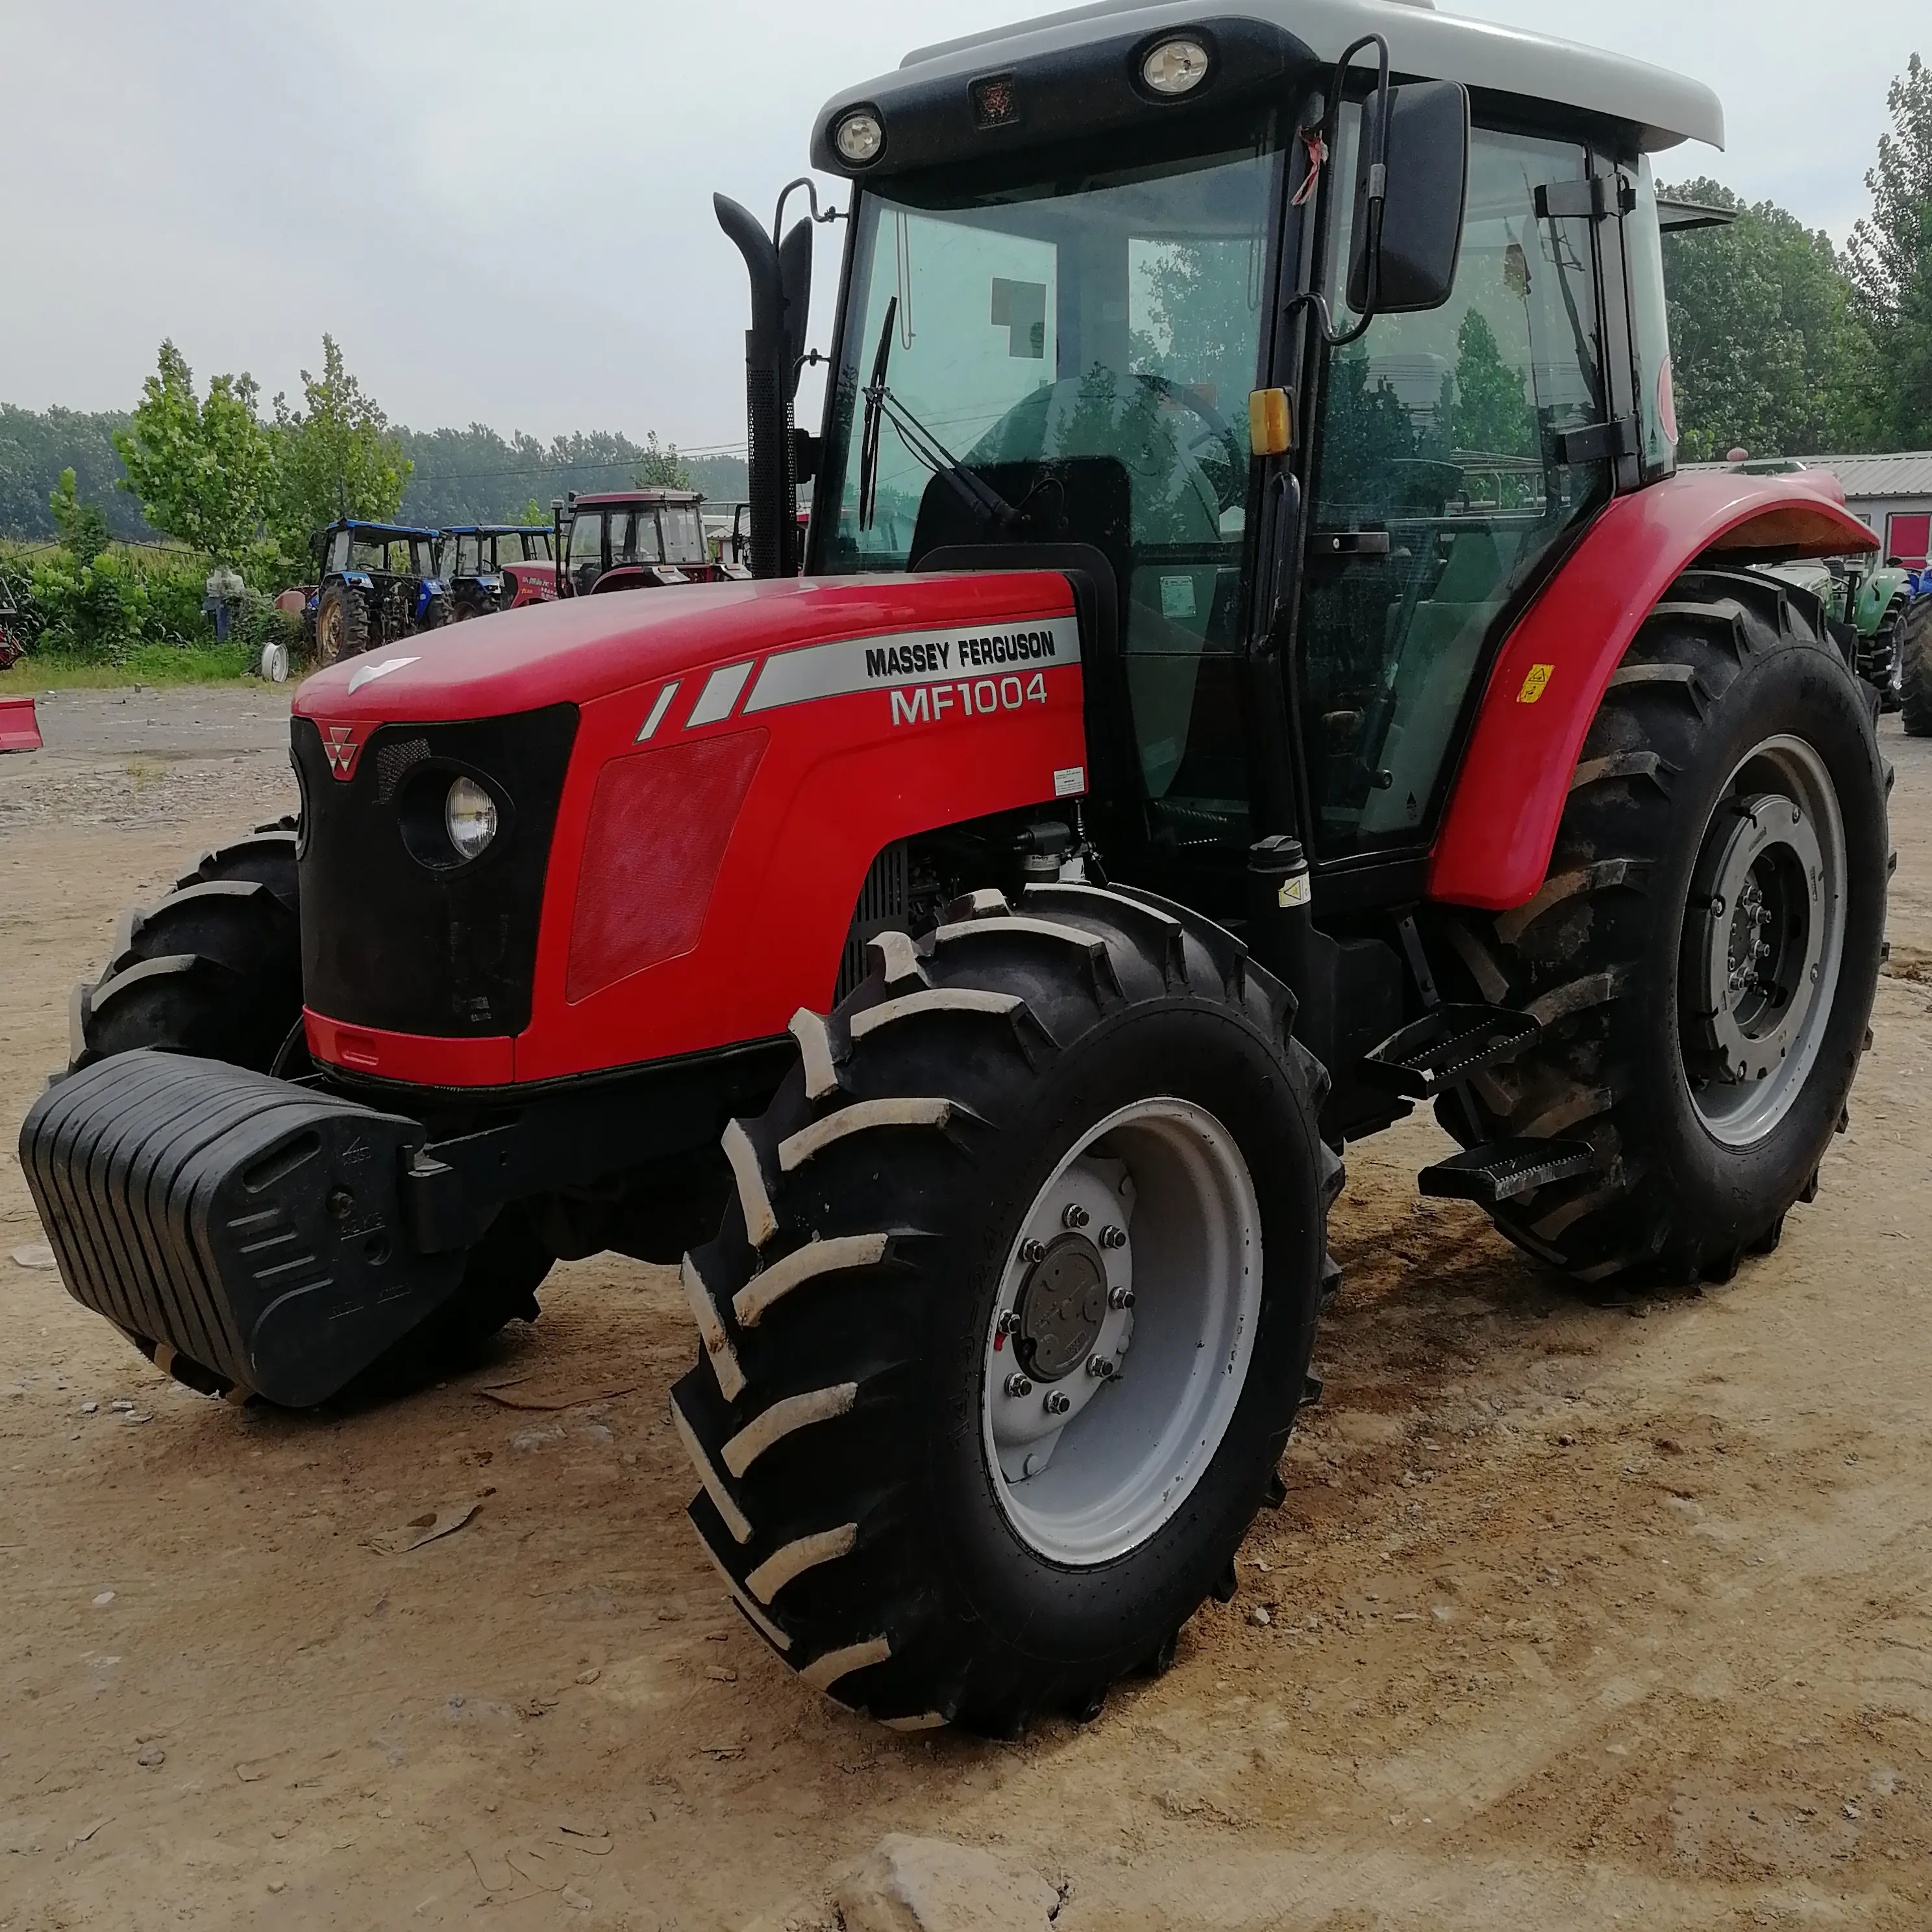 MF1104hp tractor es un tractor de segunda mano a estrenar con especificaciones asequibles y baratas de 4*4.